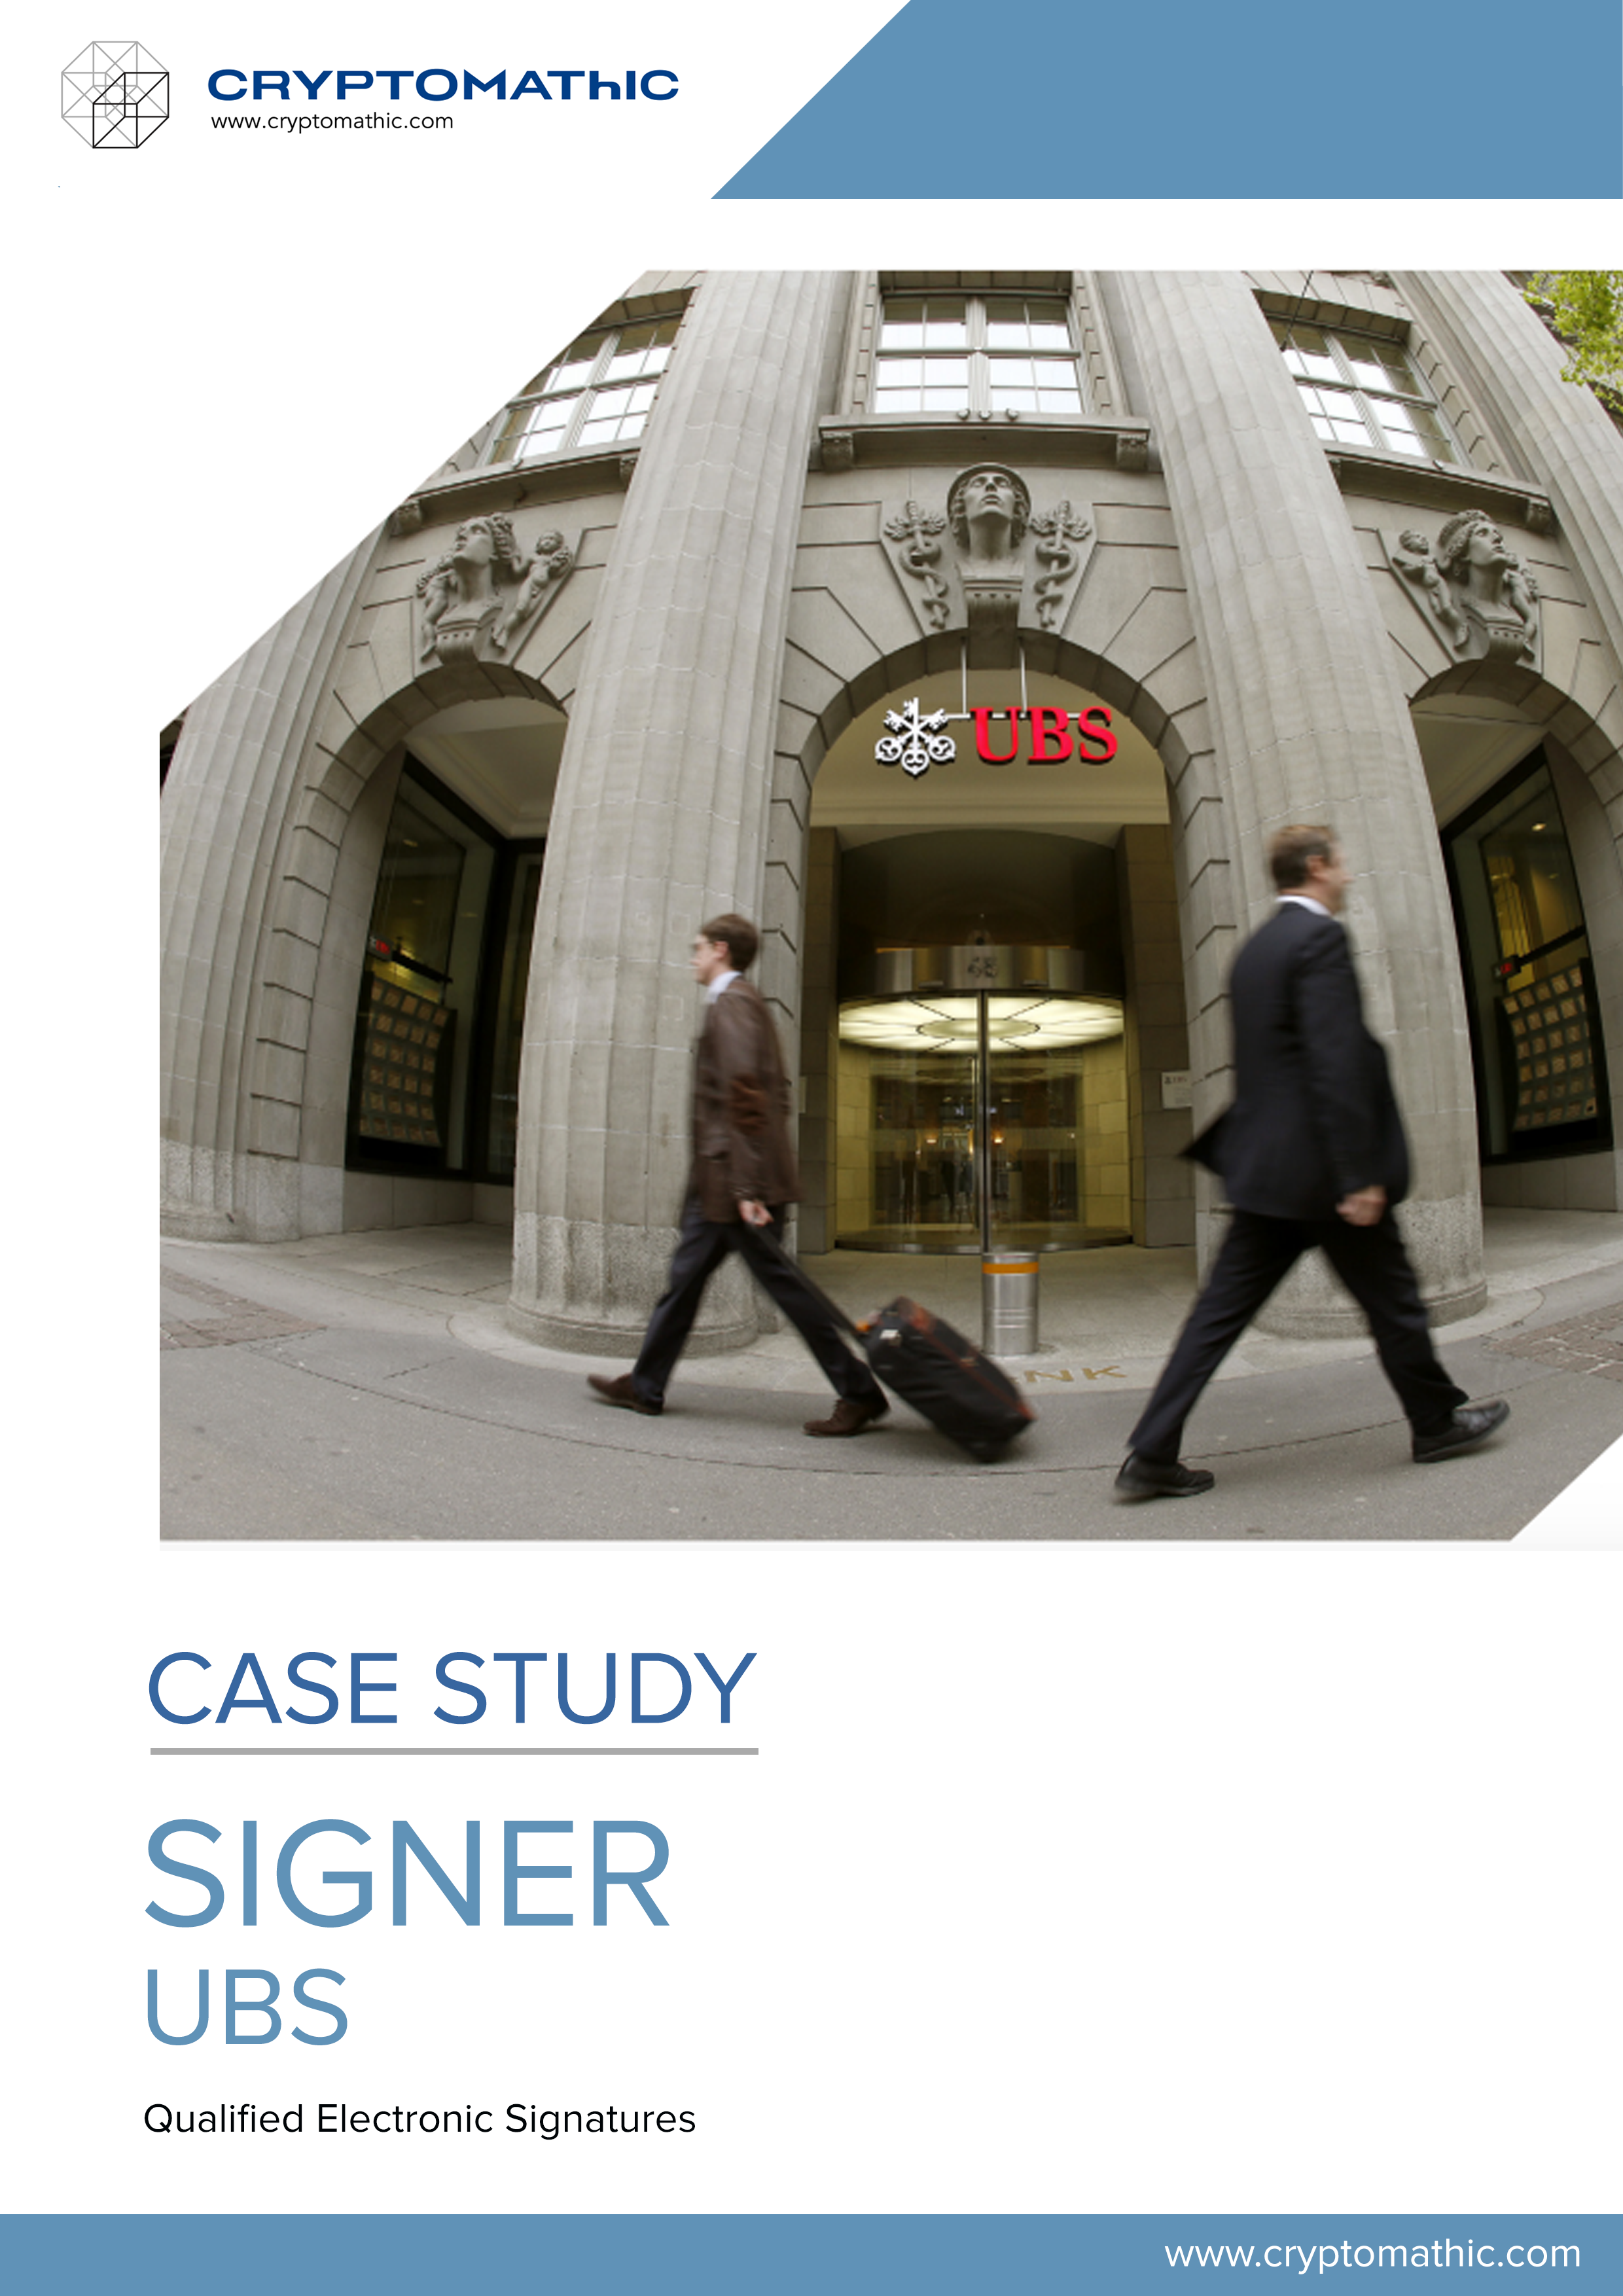 03-Signer-casestudy-UBS